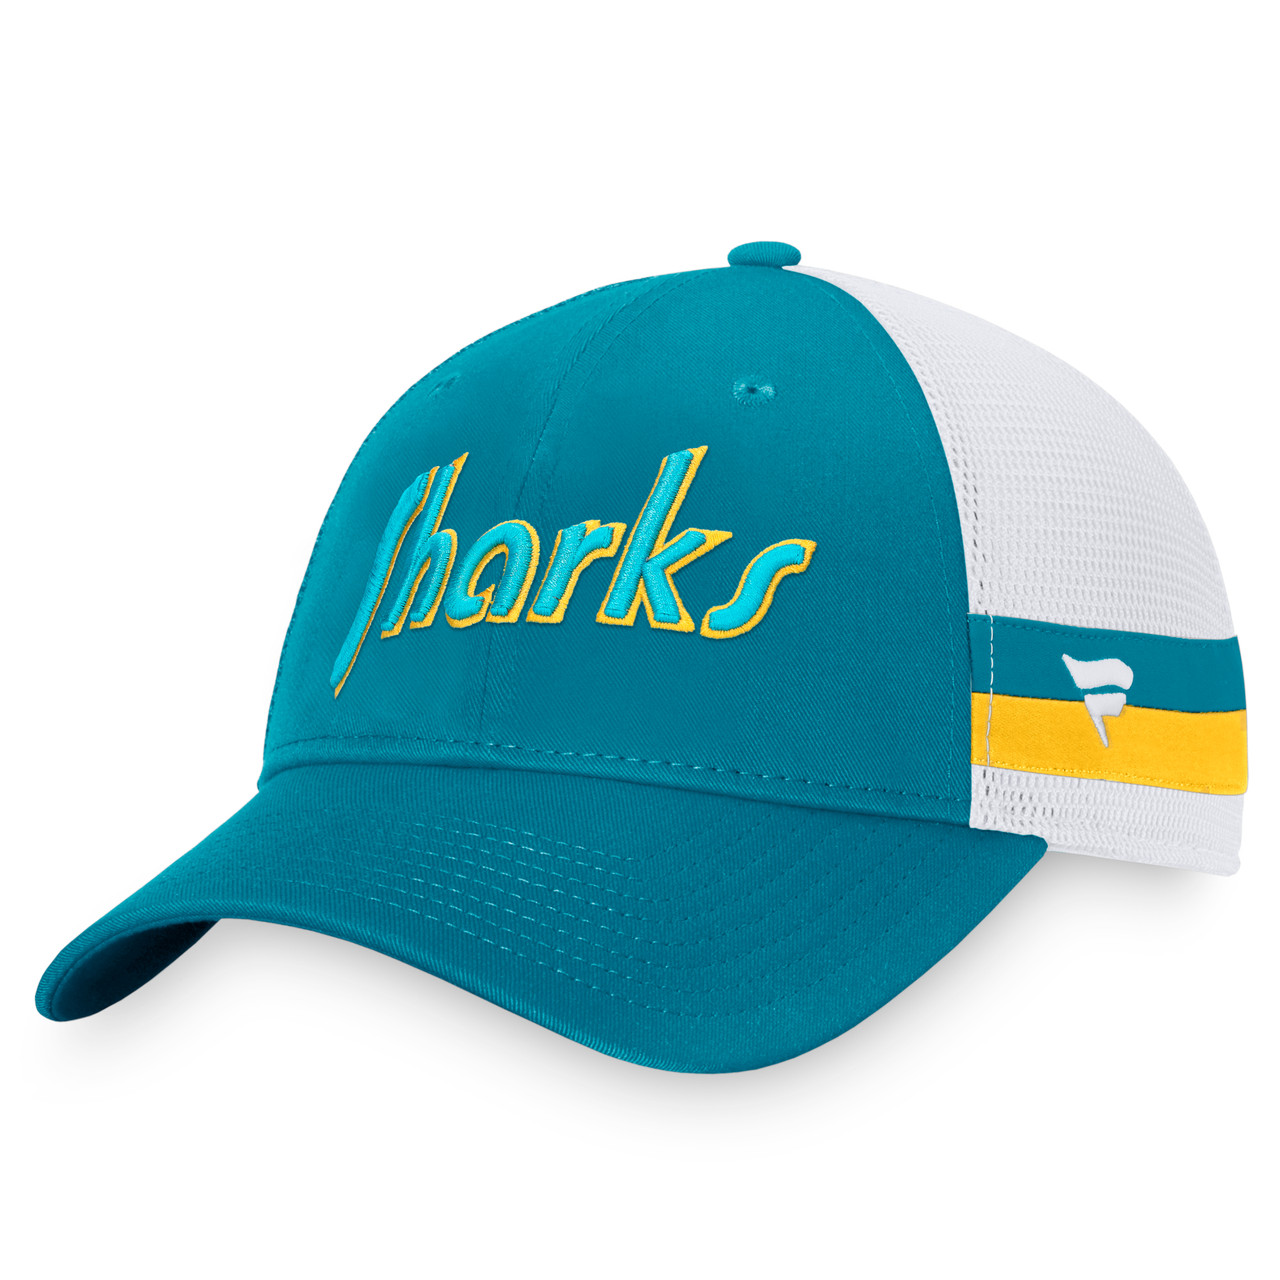 Men's Fanatics Branded Gray/Teal San Jose Sharks Special Edition